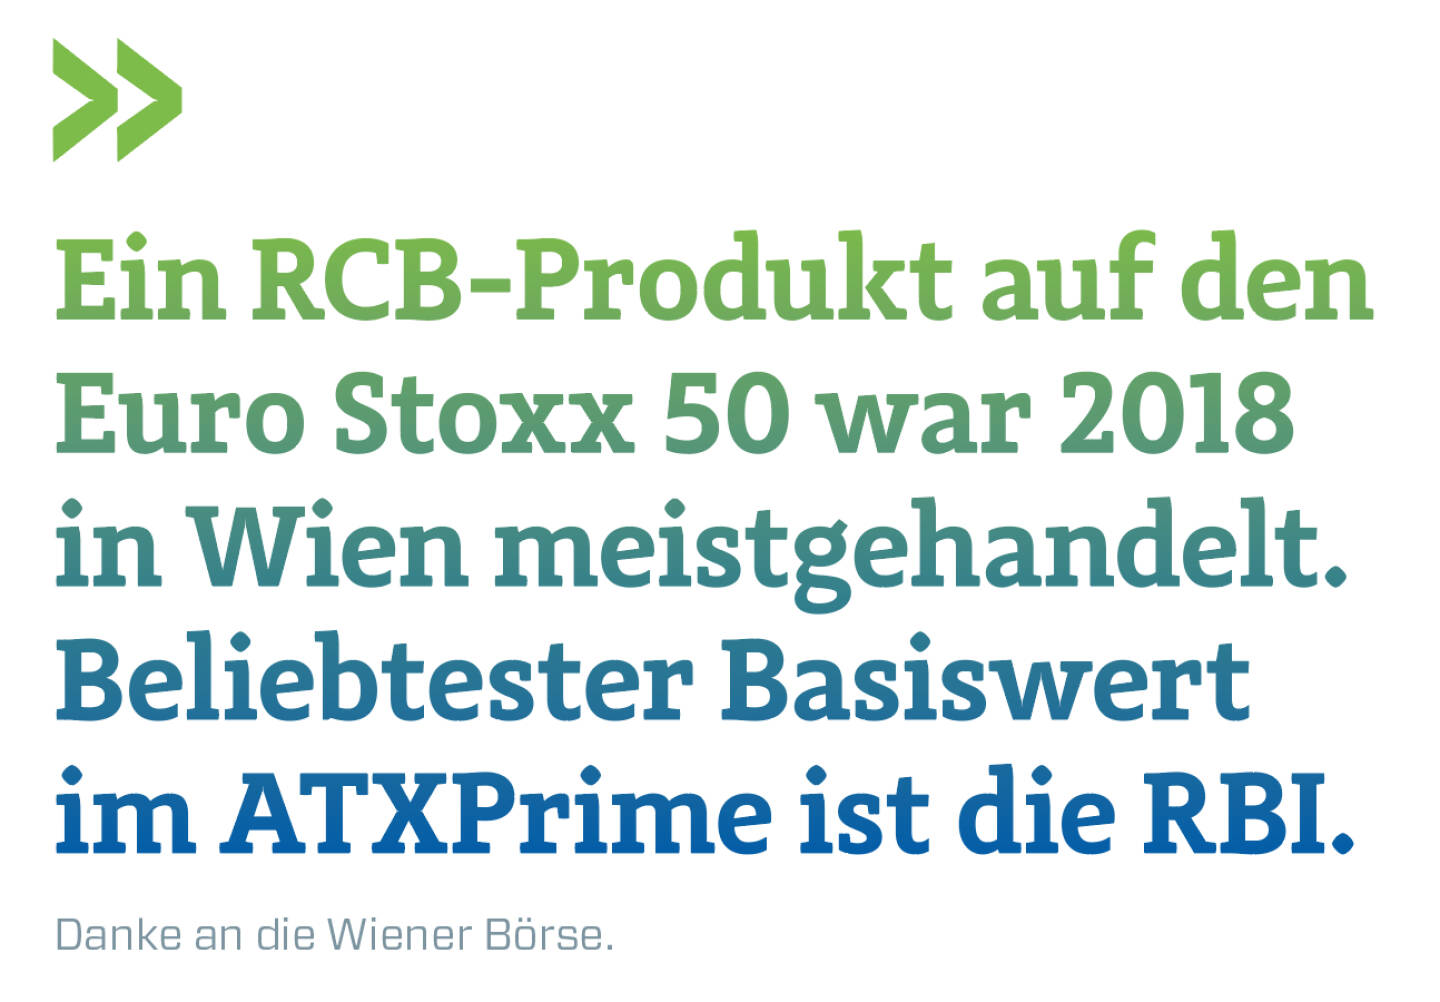 Ein RCB-Produkt auf den Euro Stoxx 50 war 2018 in Wien meistgehandelt. Beliebtester Basiswert im ATXPrime ist die RBI.
Danke an die Wiener Börse.